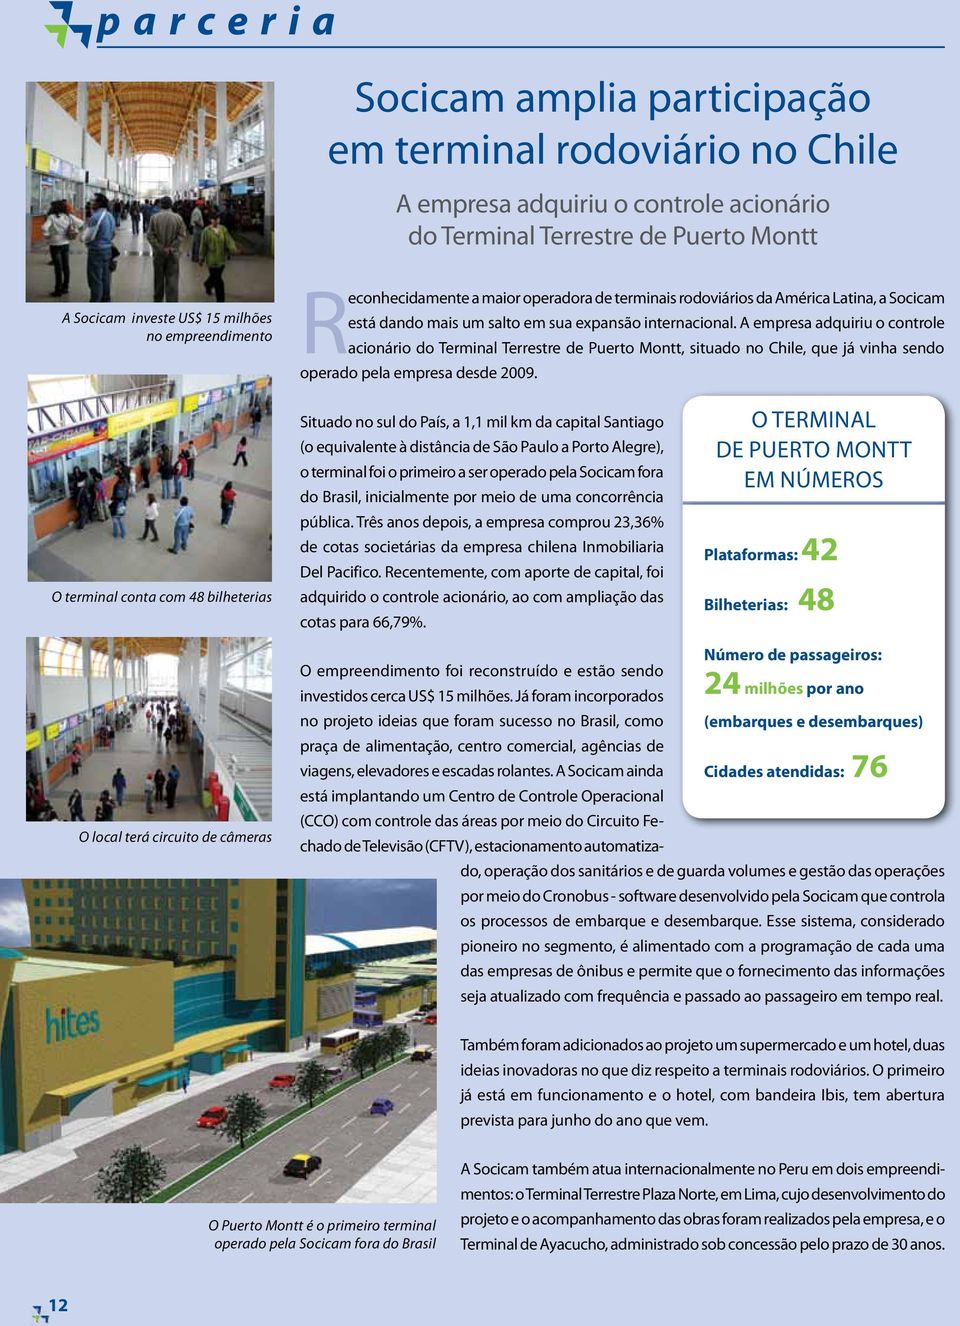 A empresa adquiriu o controle acionário do Terminal Terrestre de Puerto Montt, situado no Chile, que já vinha sendo operado pela empresa desde 2009.